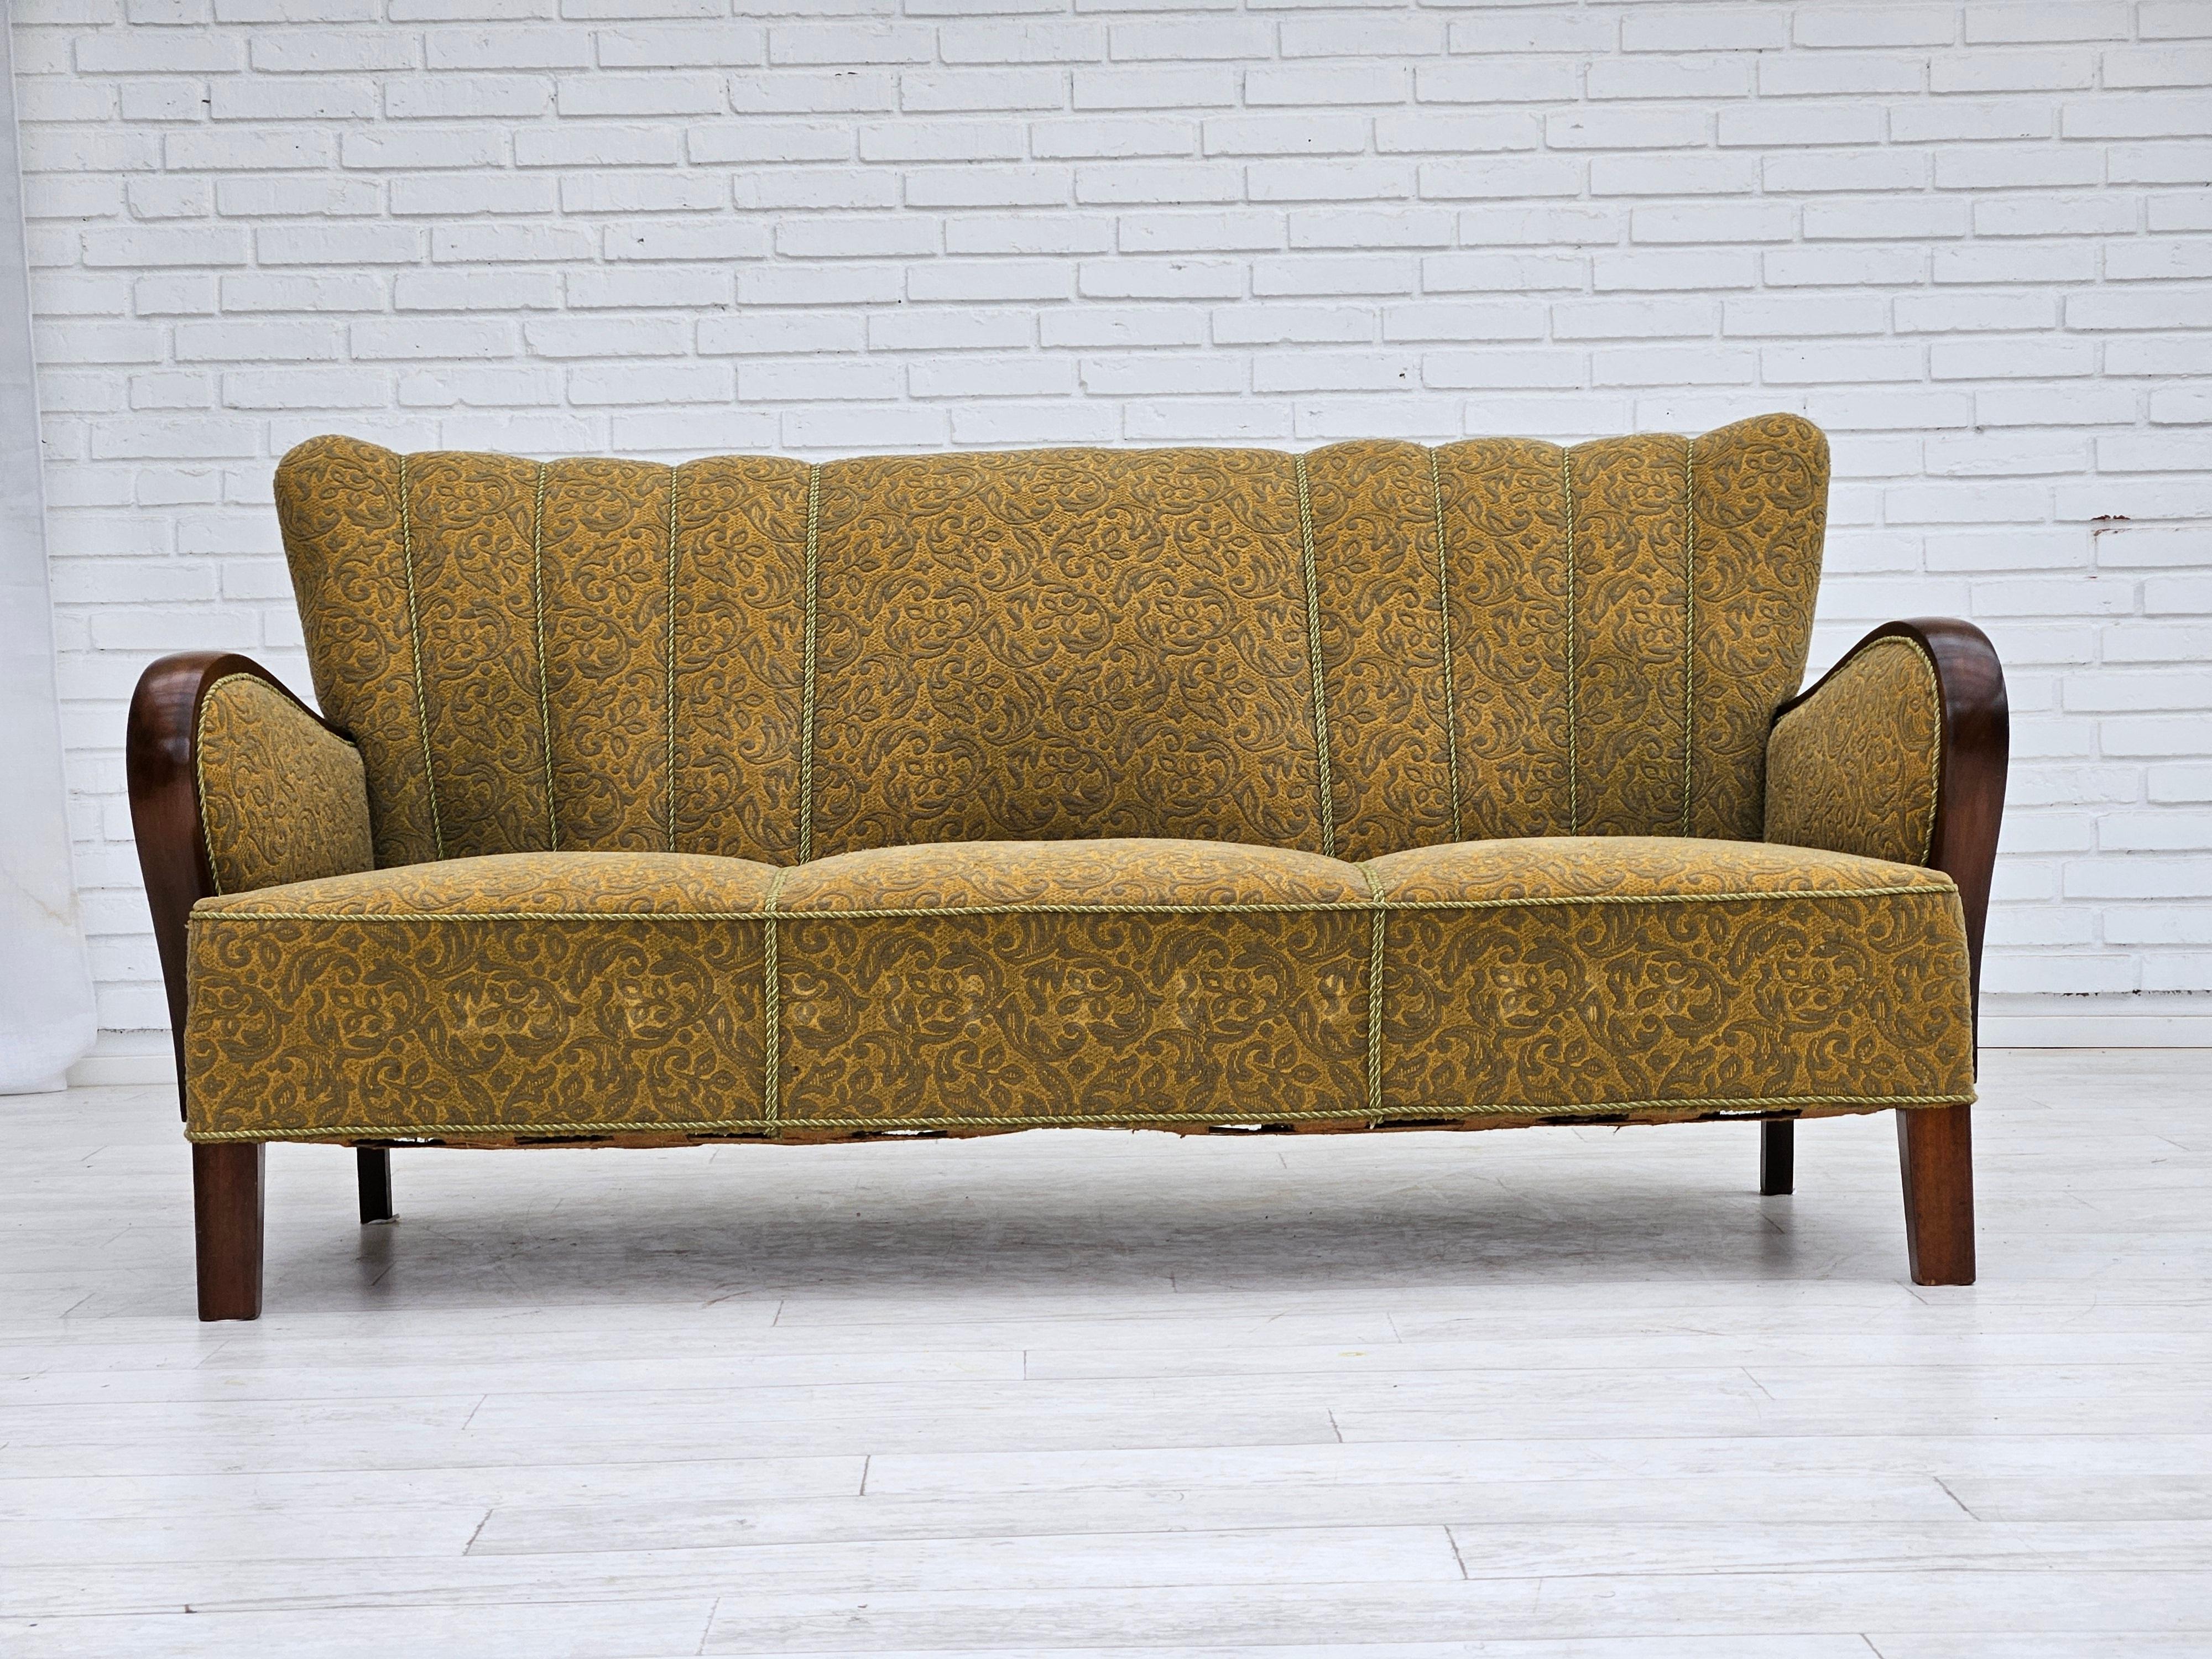 Canapé danois 3 places des années 1960 en très bon état d'origine : pas d'odeurs ni de taches. Tissu d'ameublement coton/laine vert clair, ressorts en laiton dans l'assise, pieds en hêtre. Fabriqué par un fabricant de meubles danois dans les années